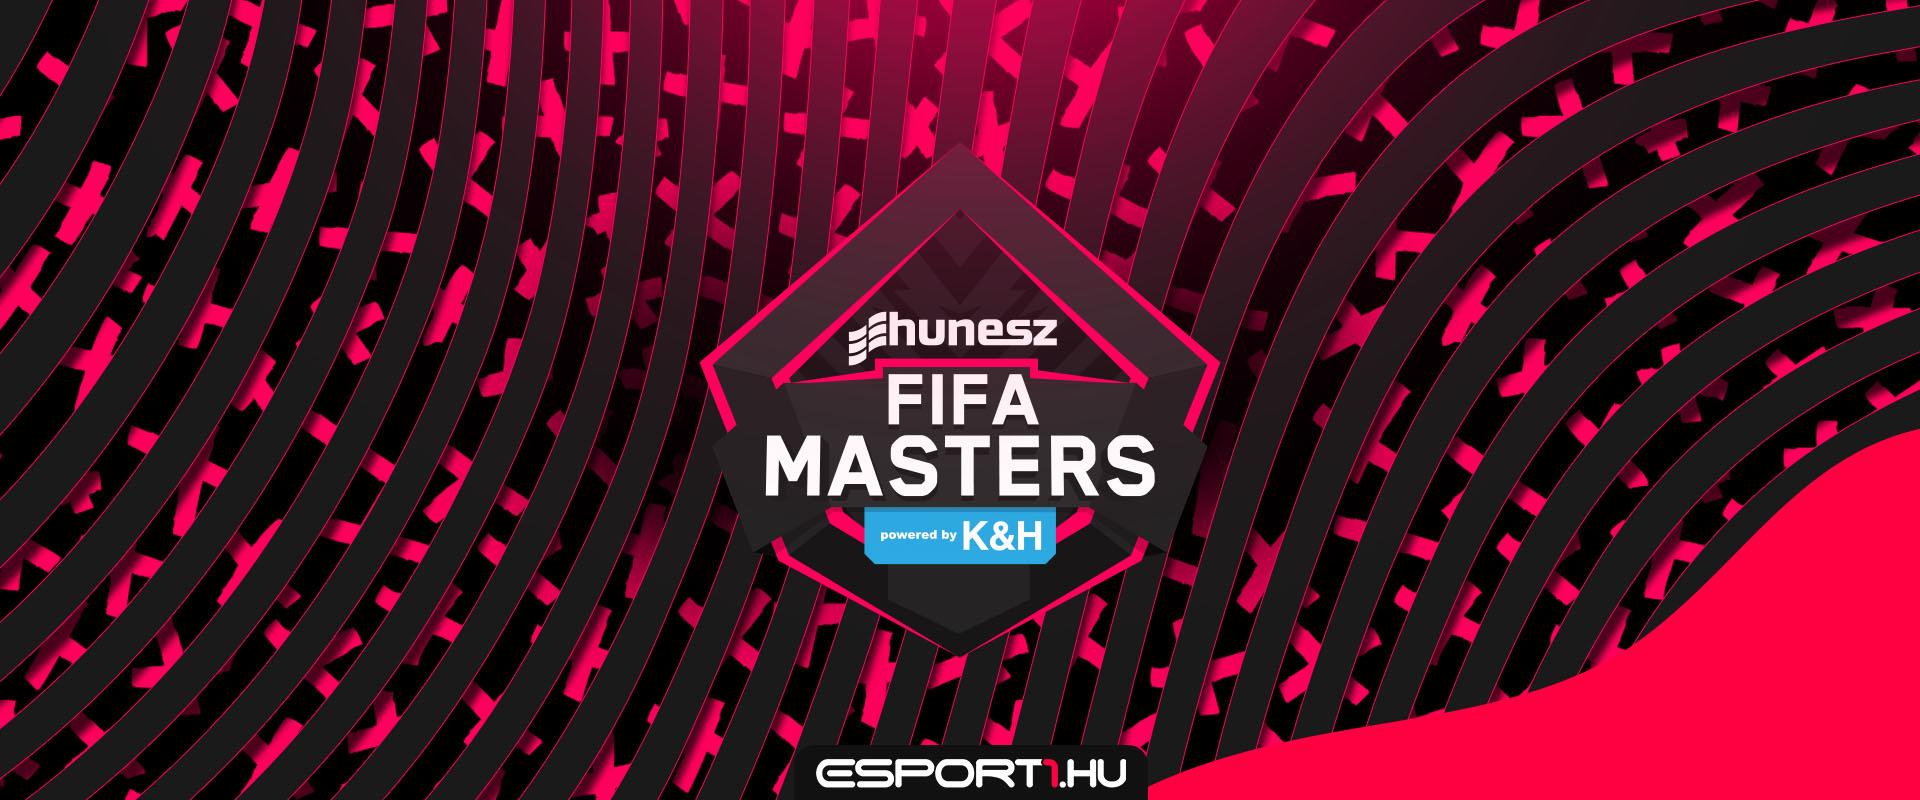 1 millió forint összdíjazással indul a HUNESZ FIFA Masters 2021-es évada!